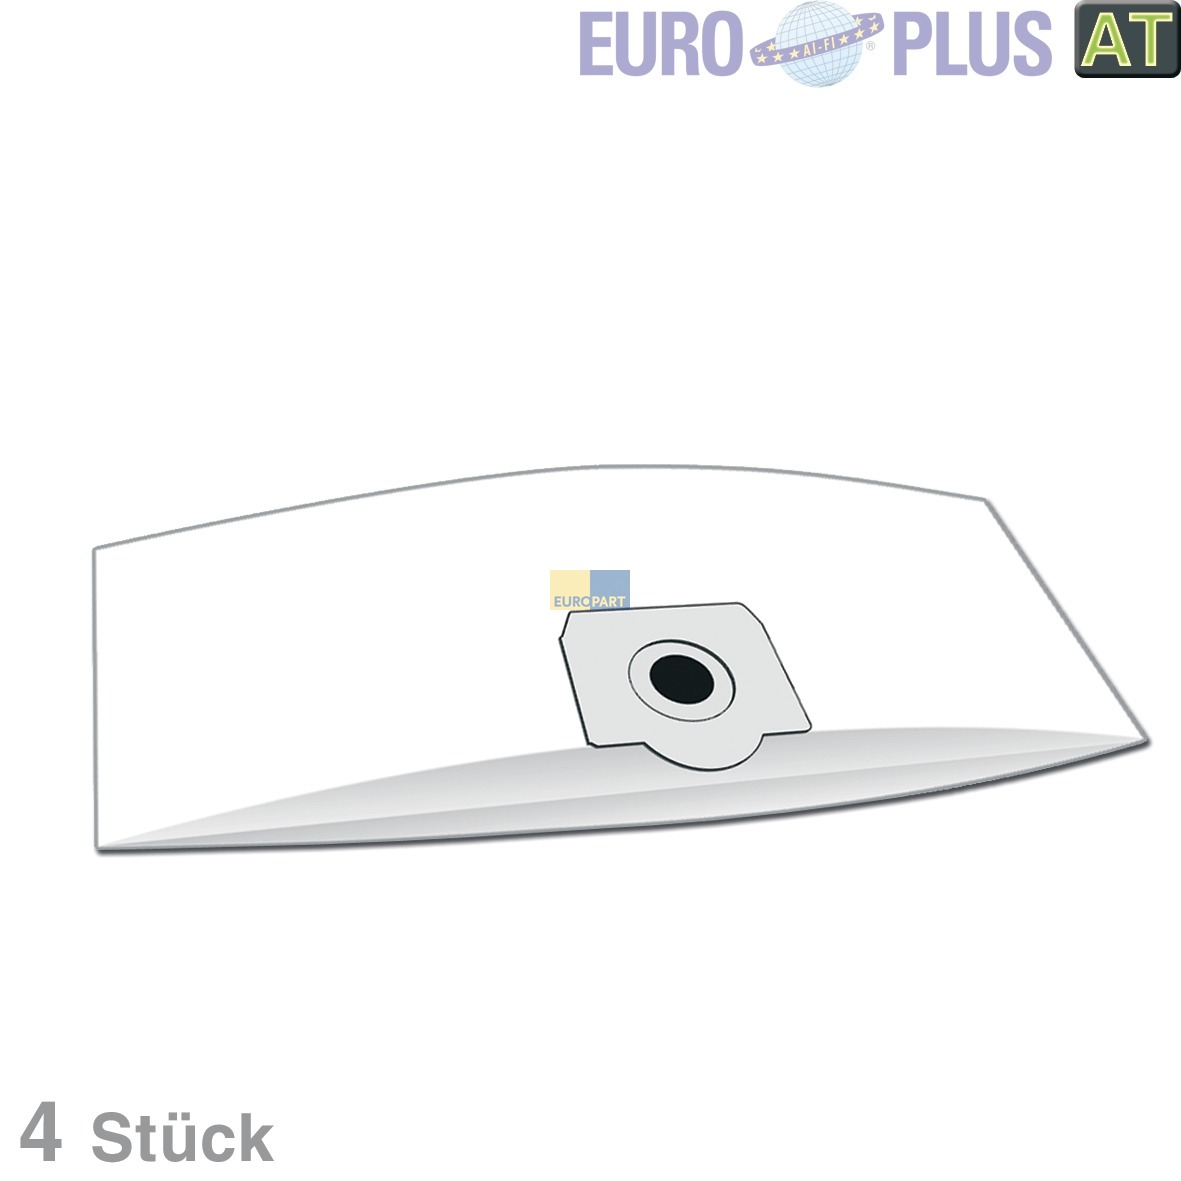 Filterbeutel Europlus  u-a- für Siemens VM Serie 4 Stk (KD-R5006)